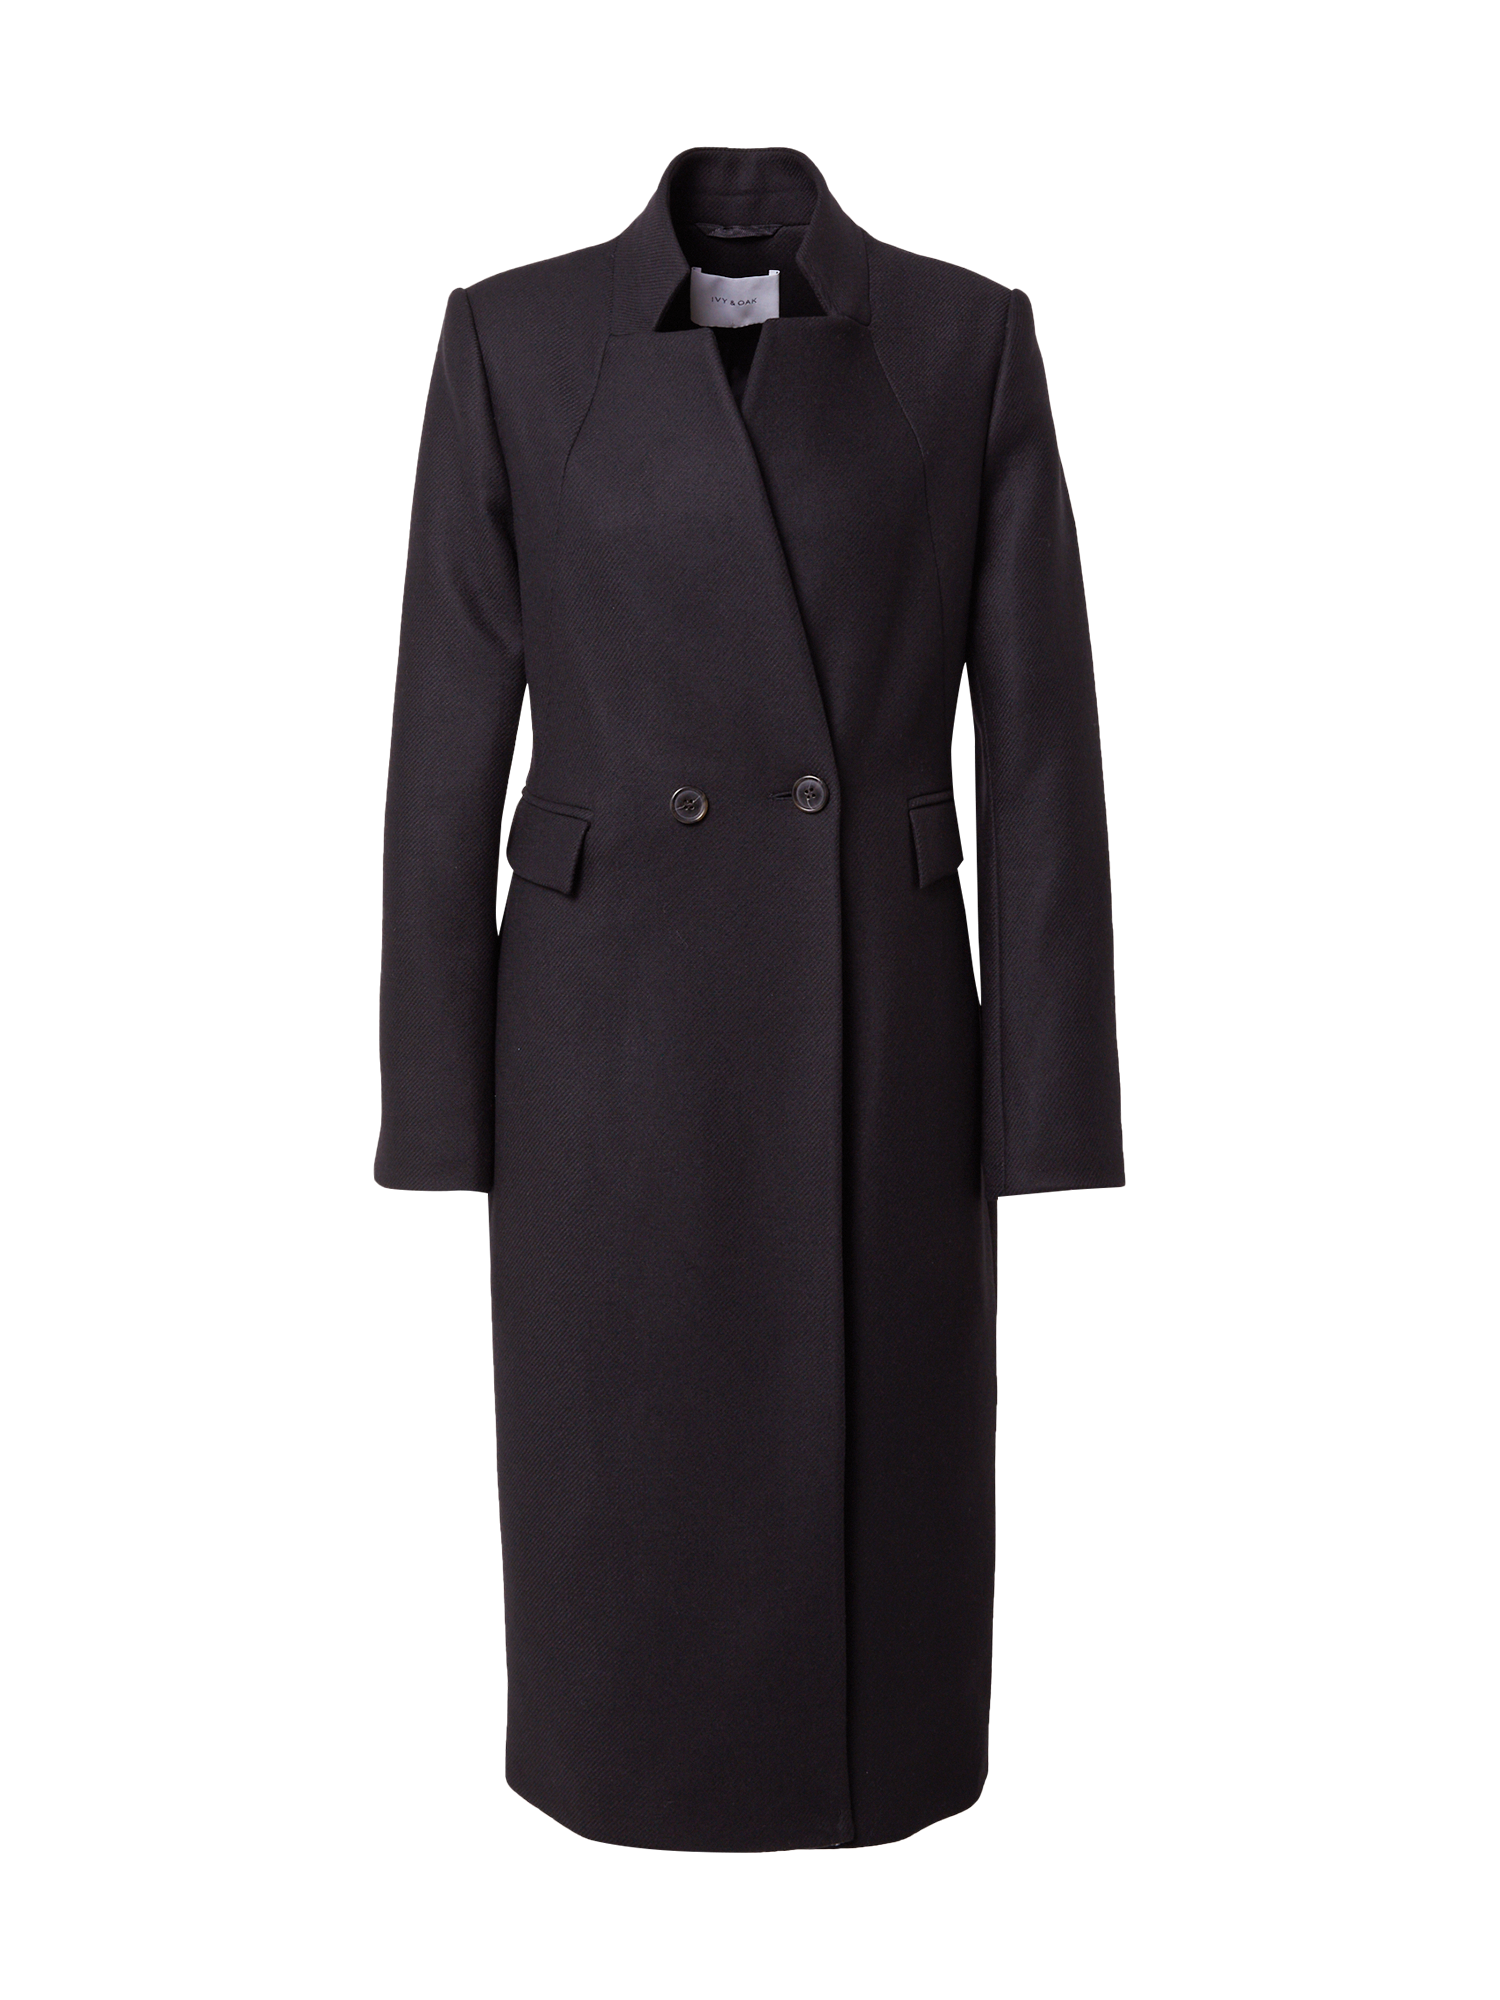 Odzież Kobiety IVY & OAK Płaszcz przejściowy w kolorze Czarnym 